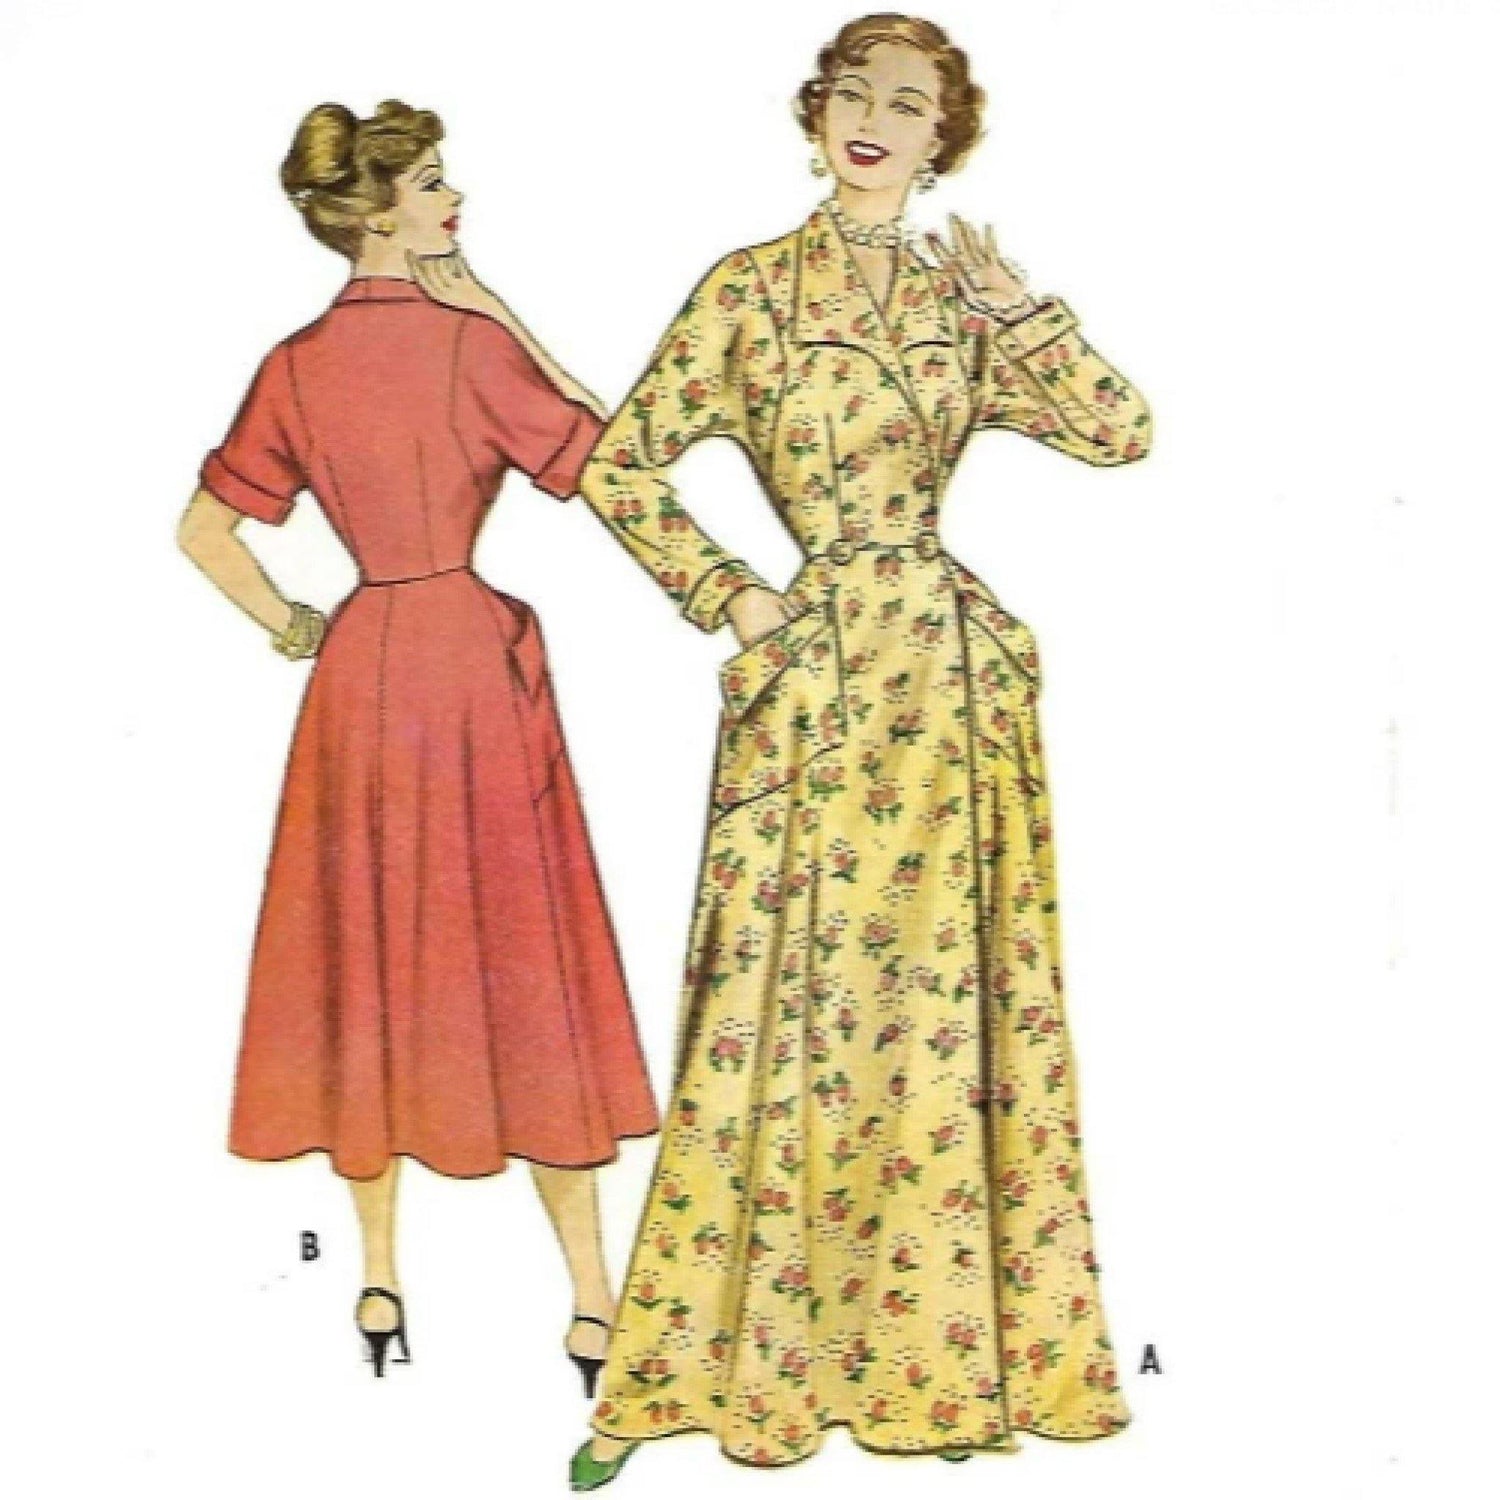 Women wearing Dressing Gowns